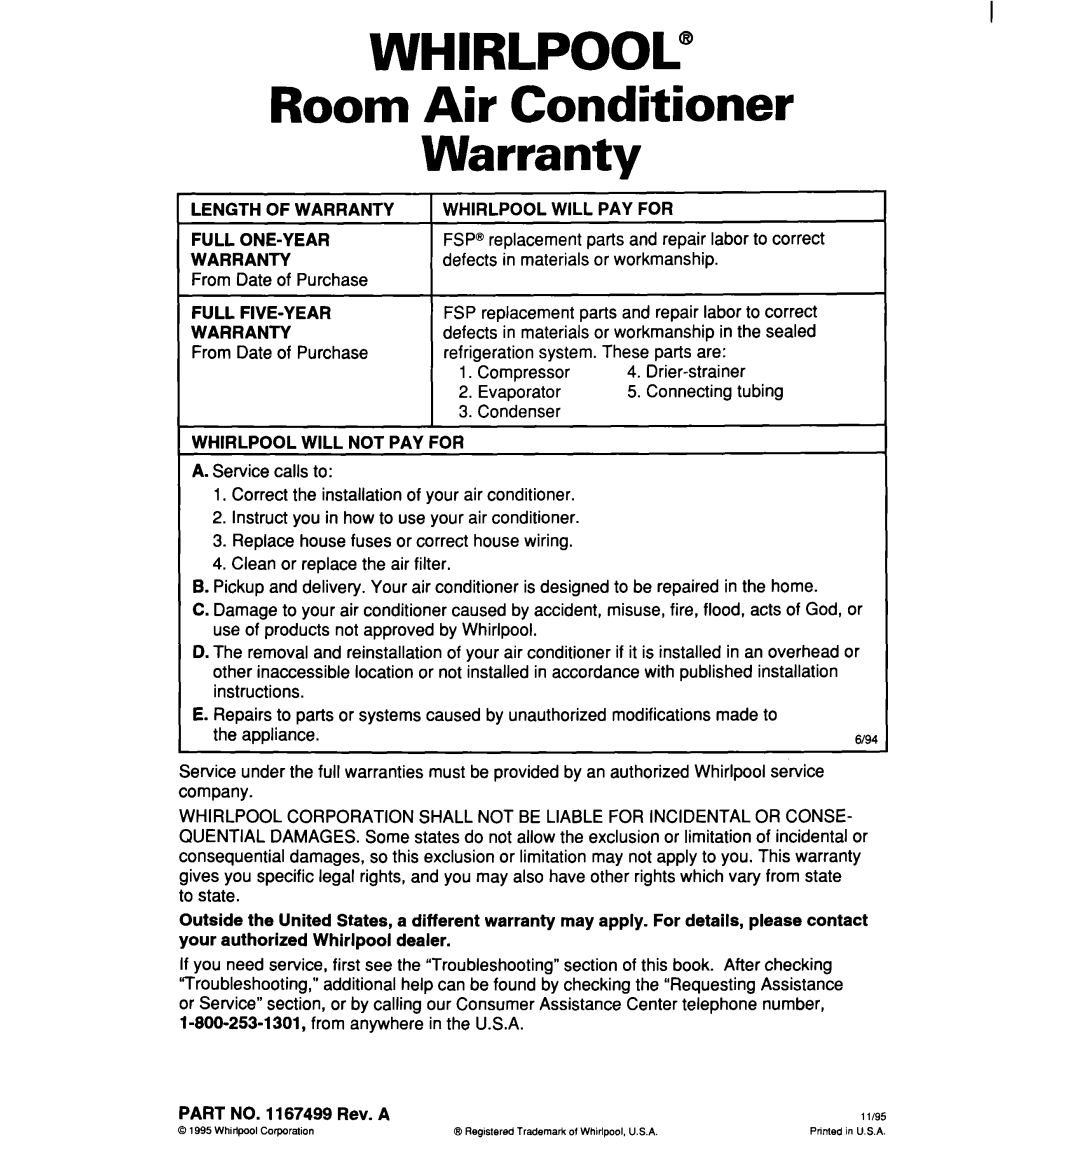 Whirlpool ACM072, ACM062 warranty Whirlpool”, Room Air Conditioner Warranty 